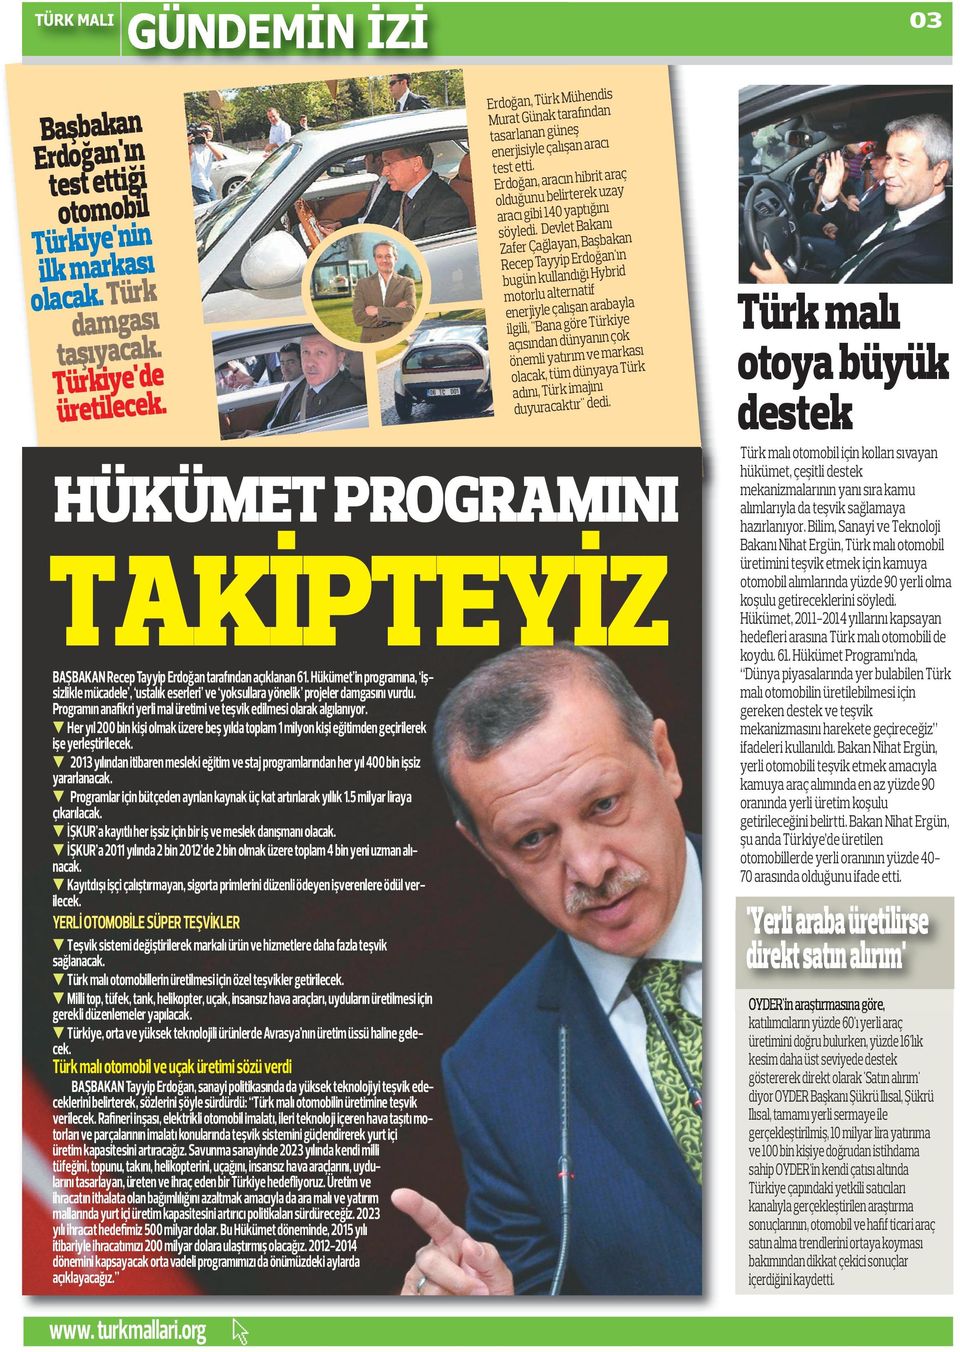 Devlet Bakanı Zafer Çağlayan, Başbakan Recep Tayyip Erdoğan'ın bugün kullandığı Hybrid motorlu alternatif enerjiyle çalışan arabayla ilgili, ''Bana göre Türkiye açısından dünyanın çok önemli yatırım